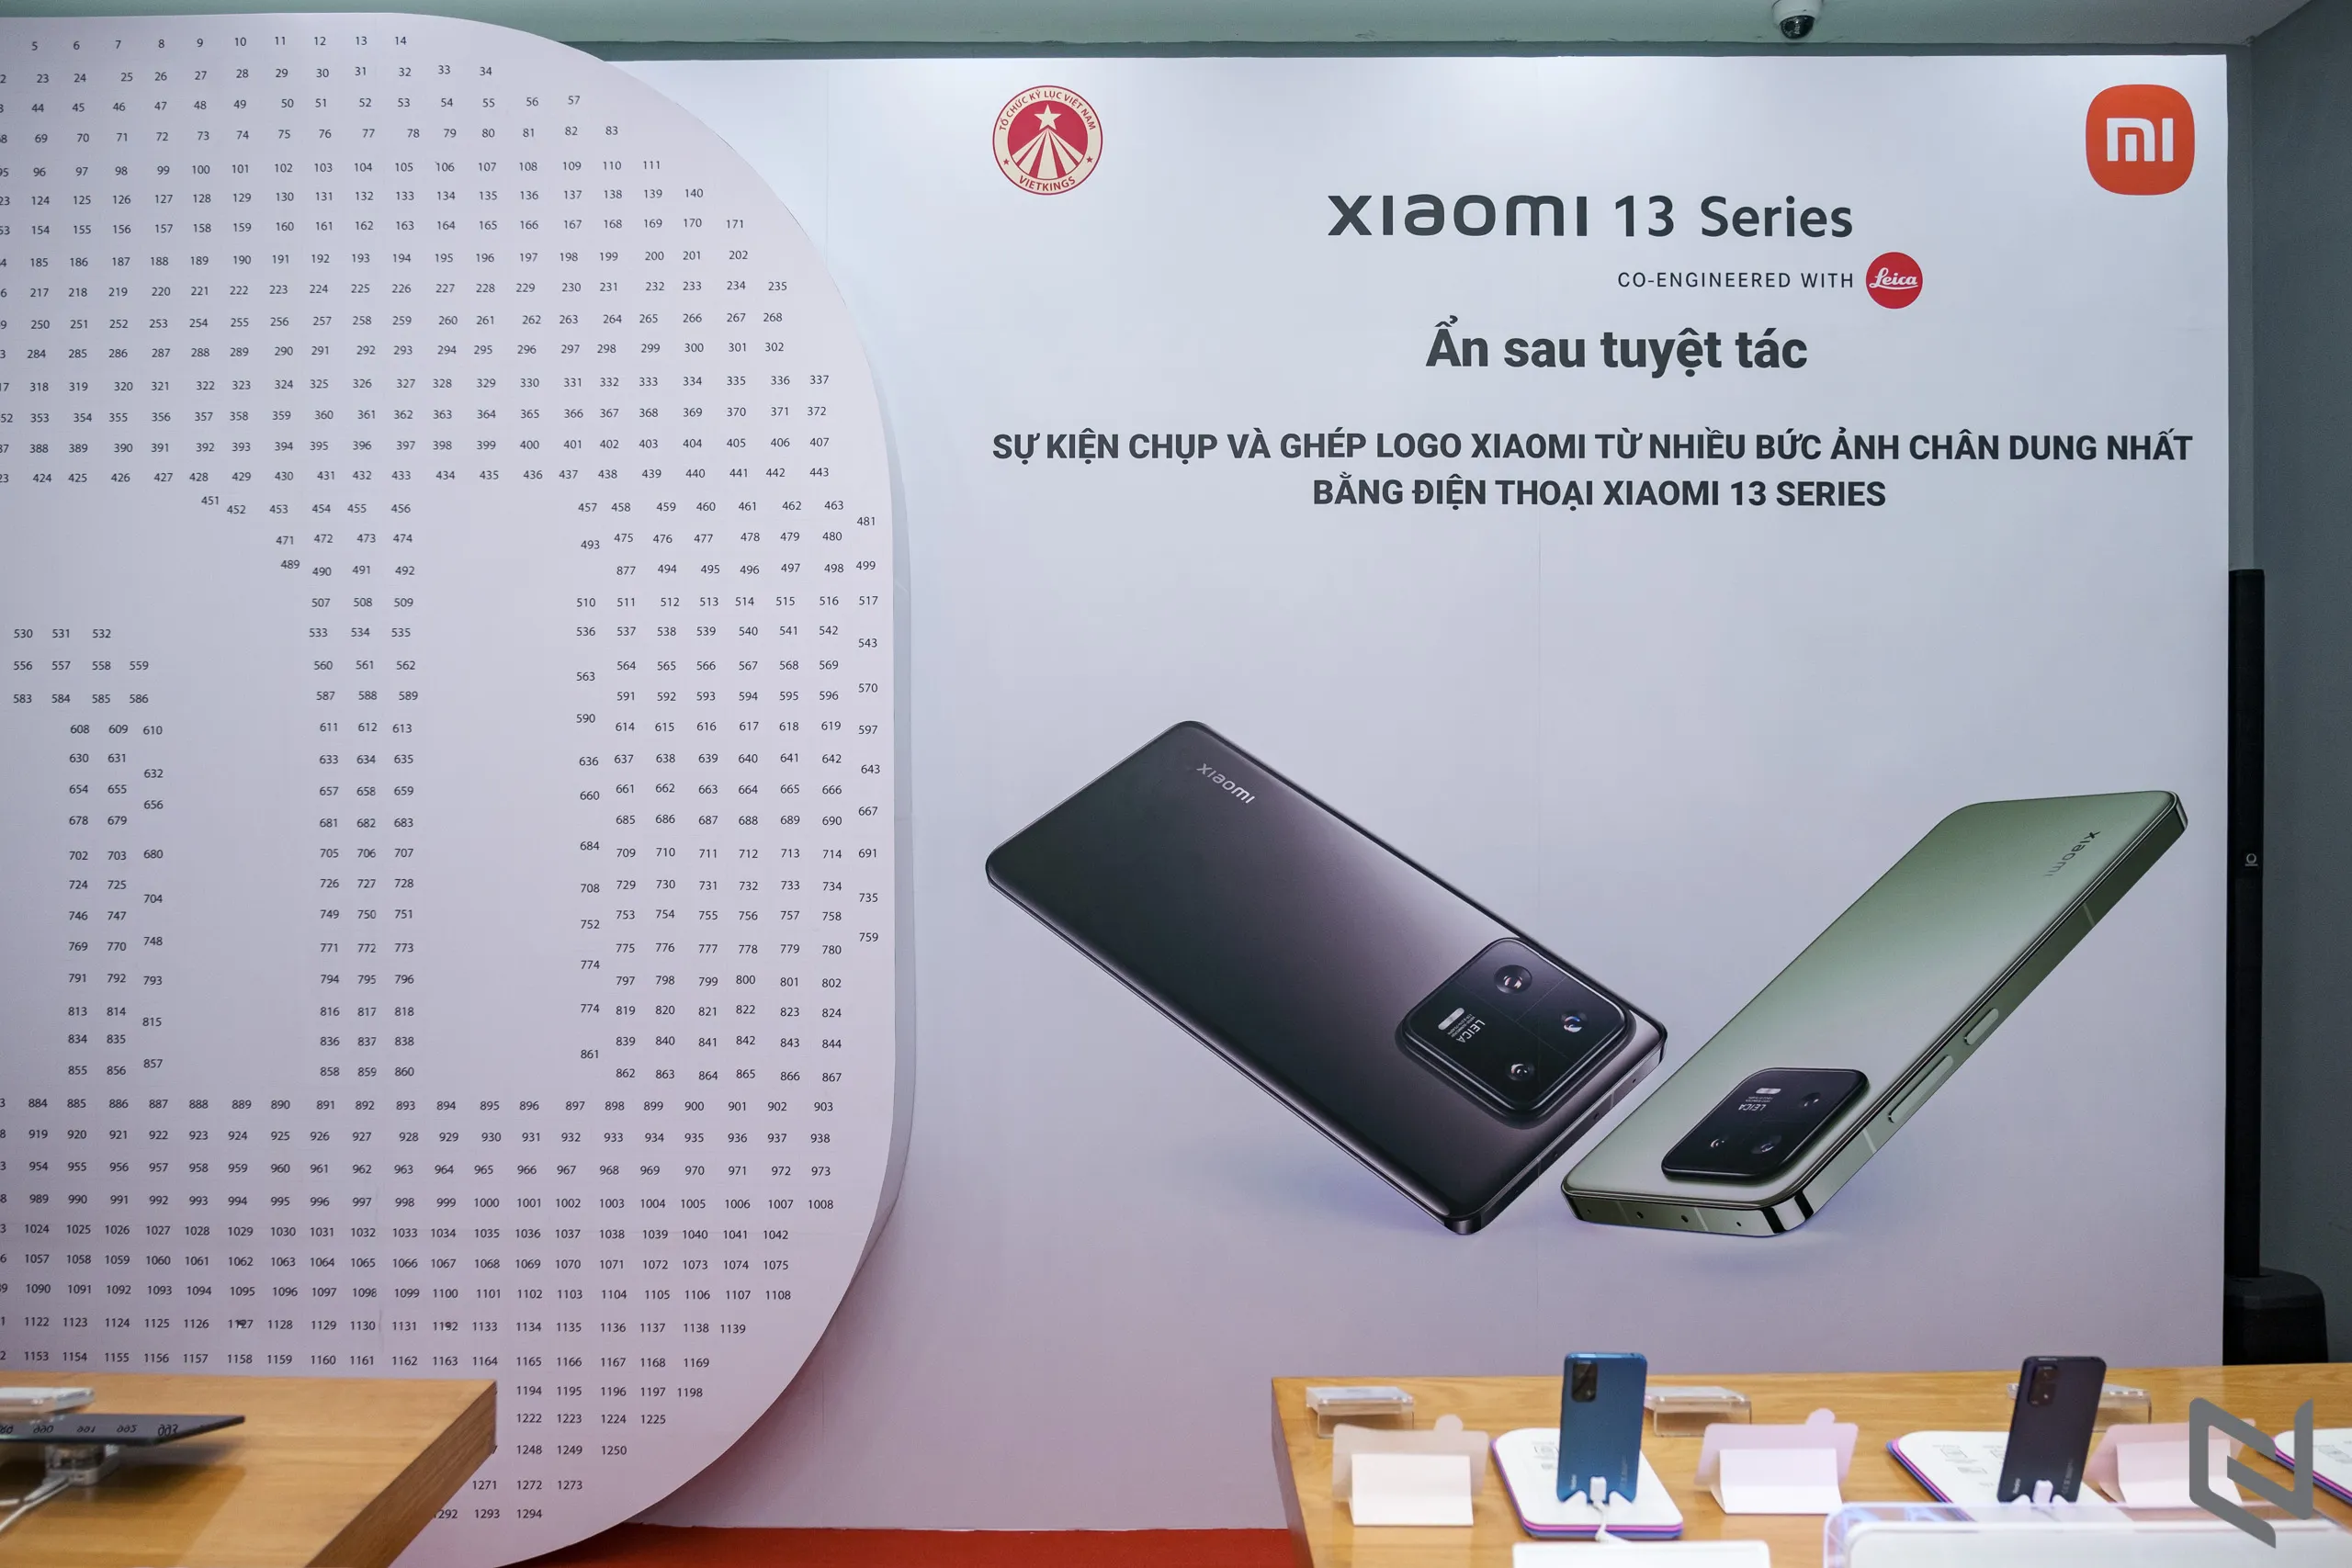 Xiaomi tổ chức sự kiện tạo kỷ lục ghép logo từ 1300 tấm hình chụp từ Xiaomi 13 series